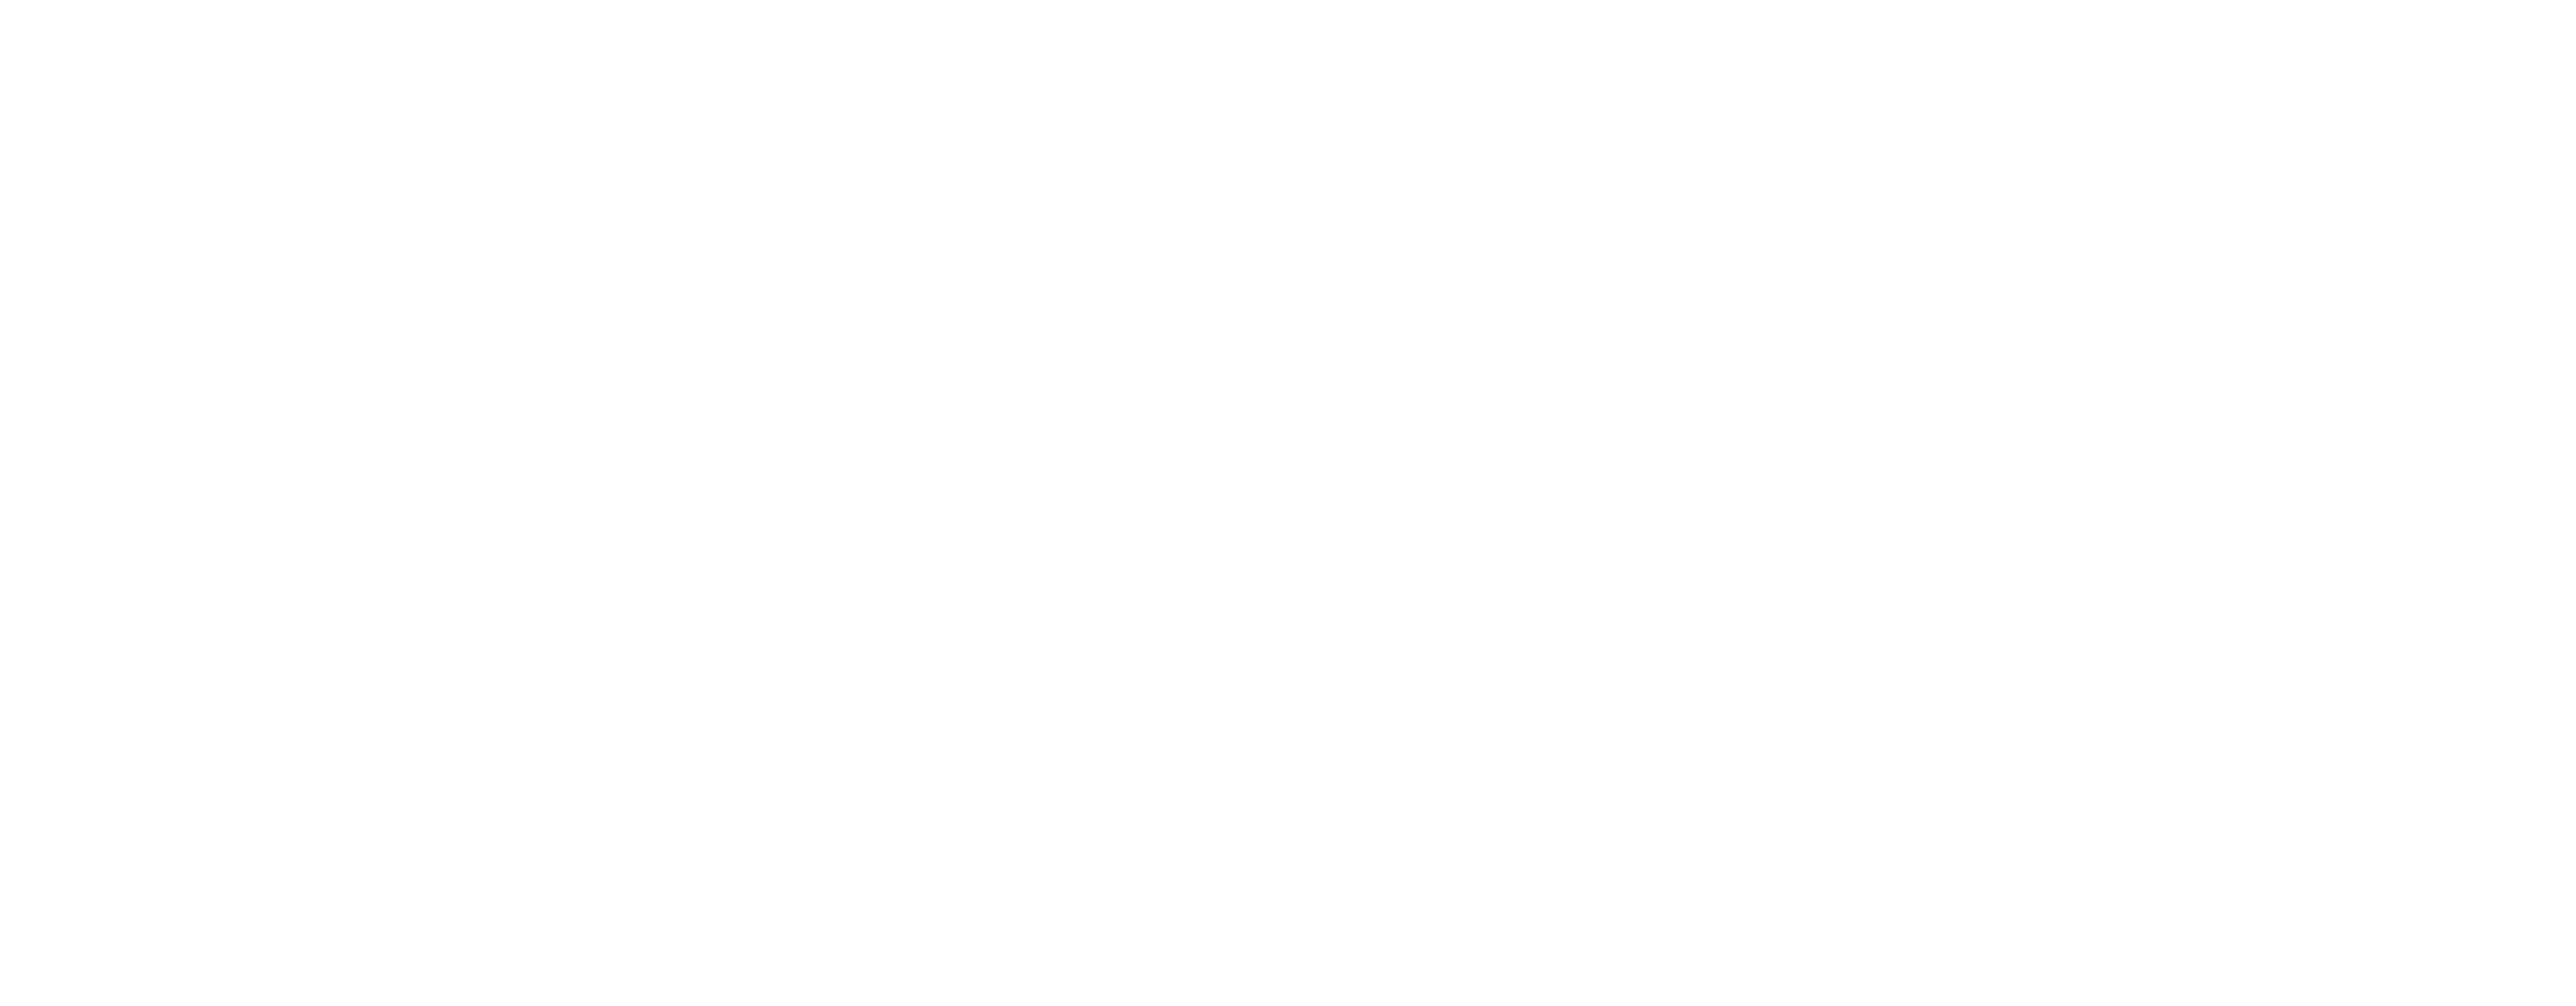 Immediate Media Ltd